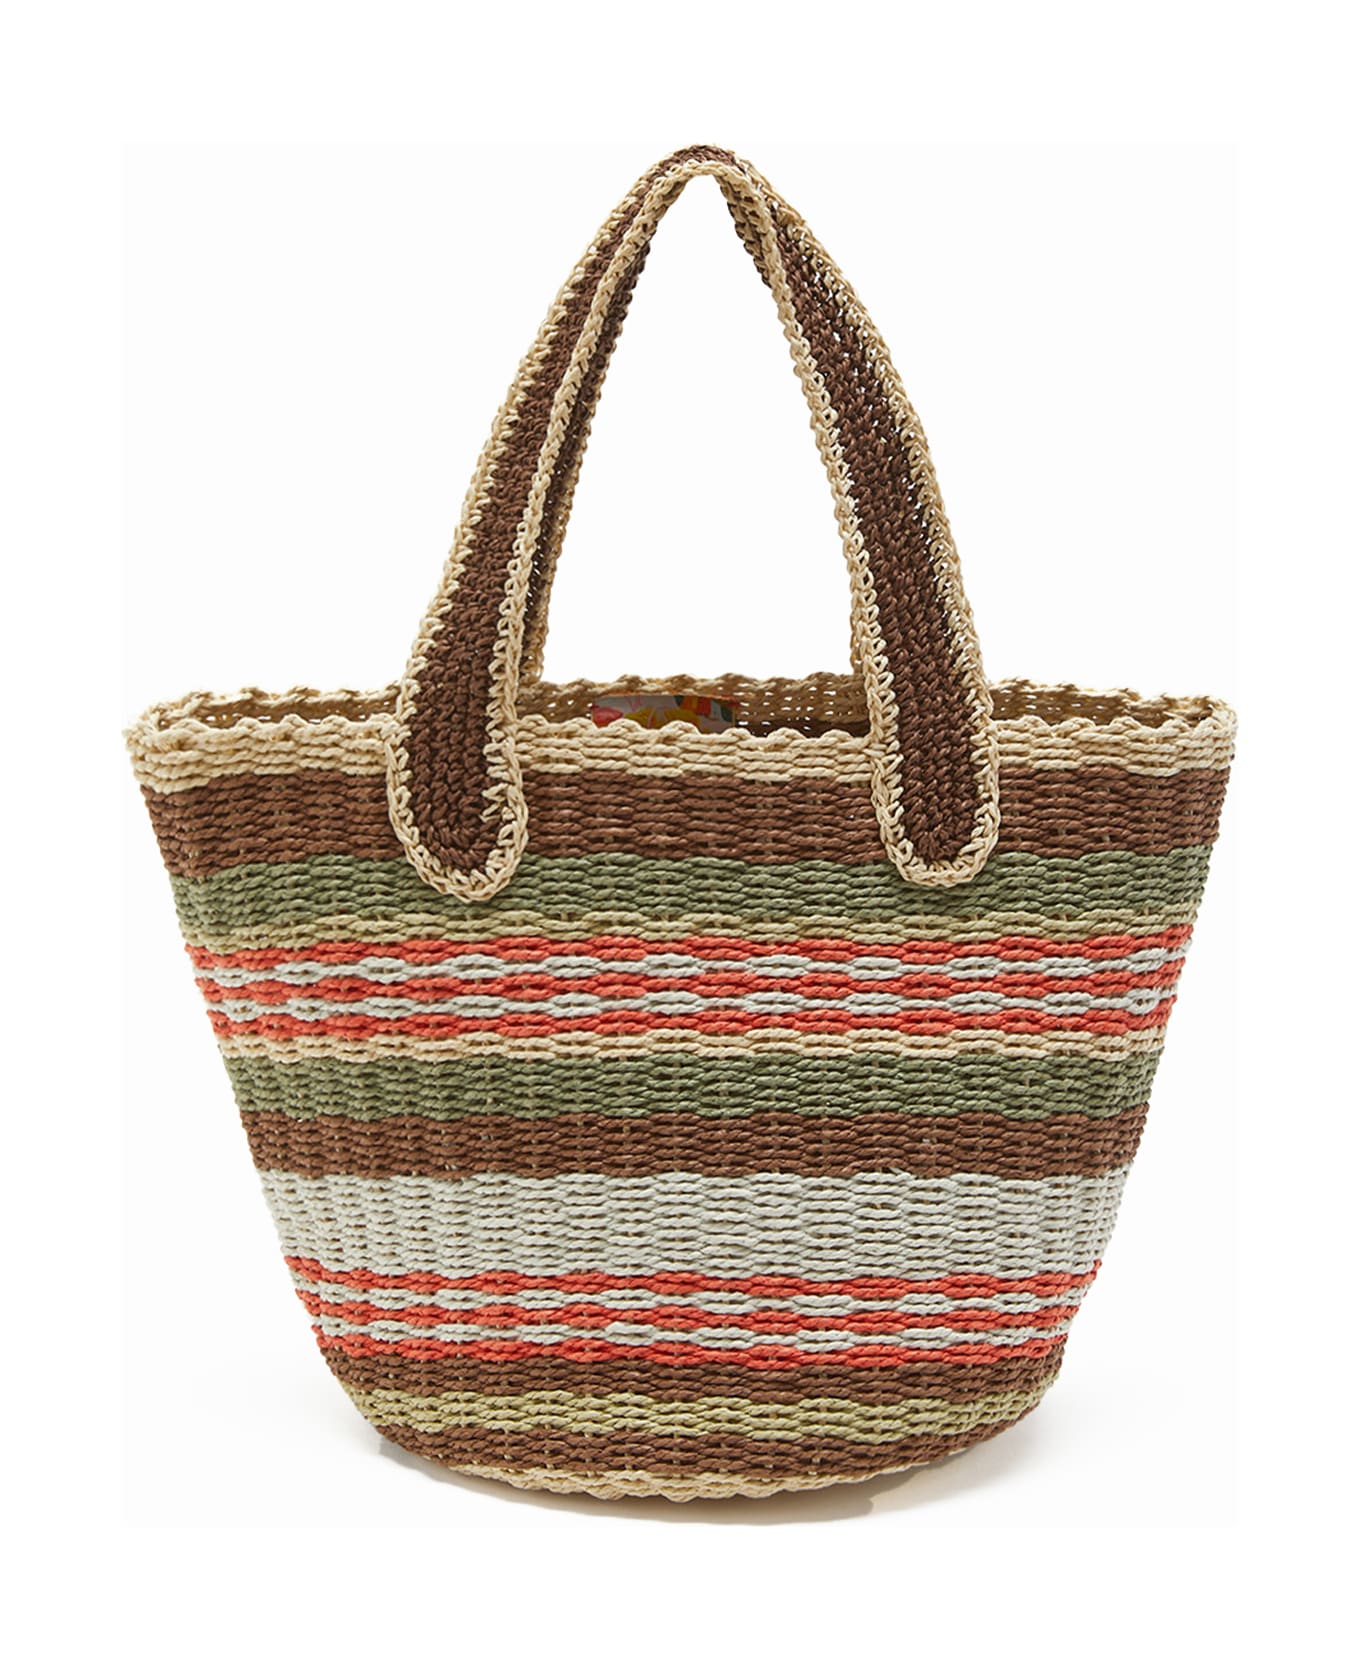 Malìparmi Shopping Bag In Hand-woven Multicolored Raffia - MARRONE/BEIGE/ARANCIO トートバッグ